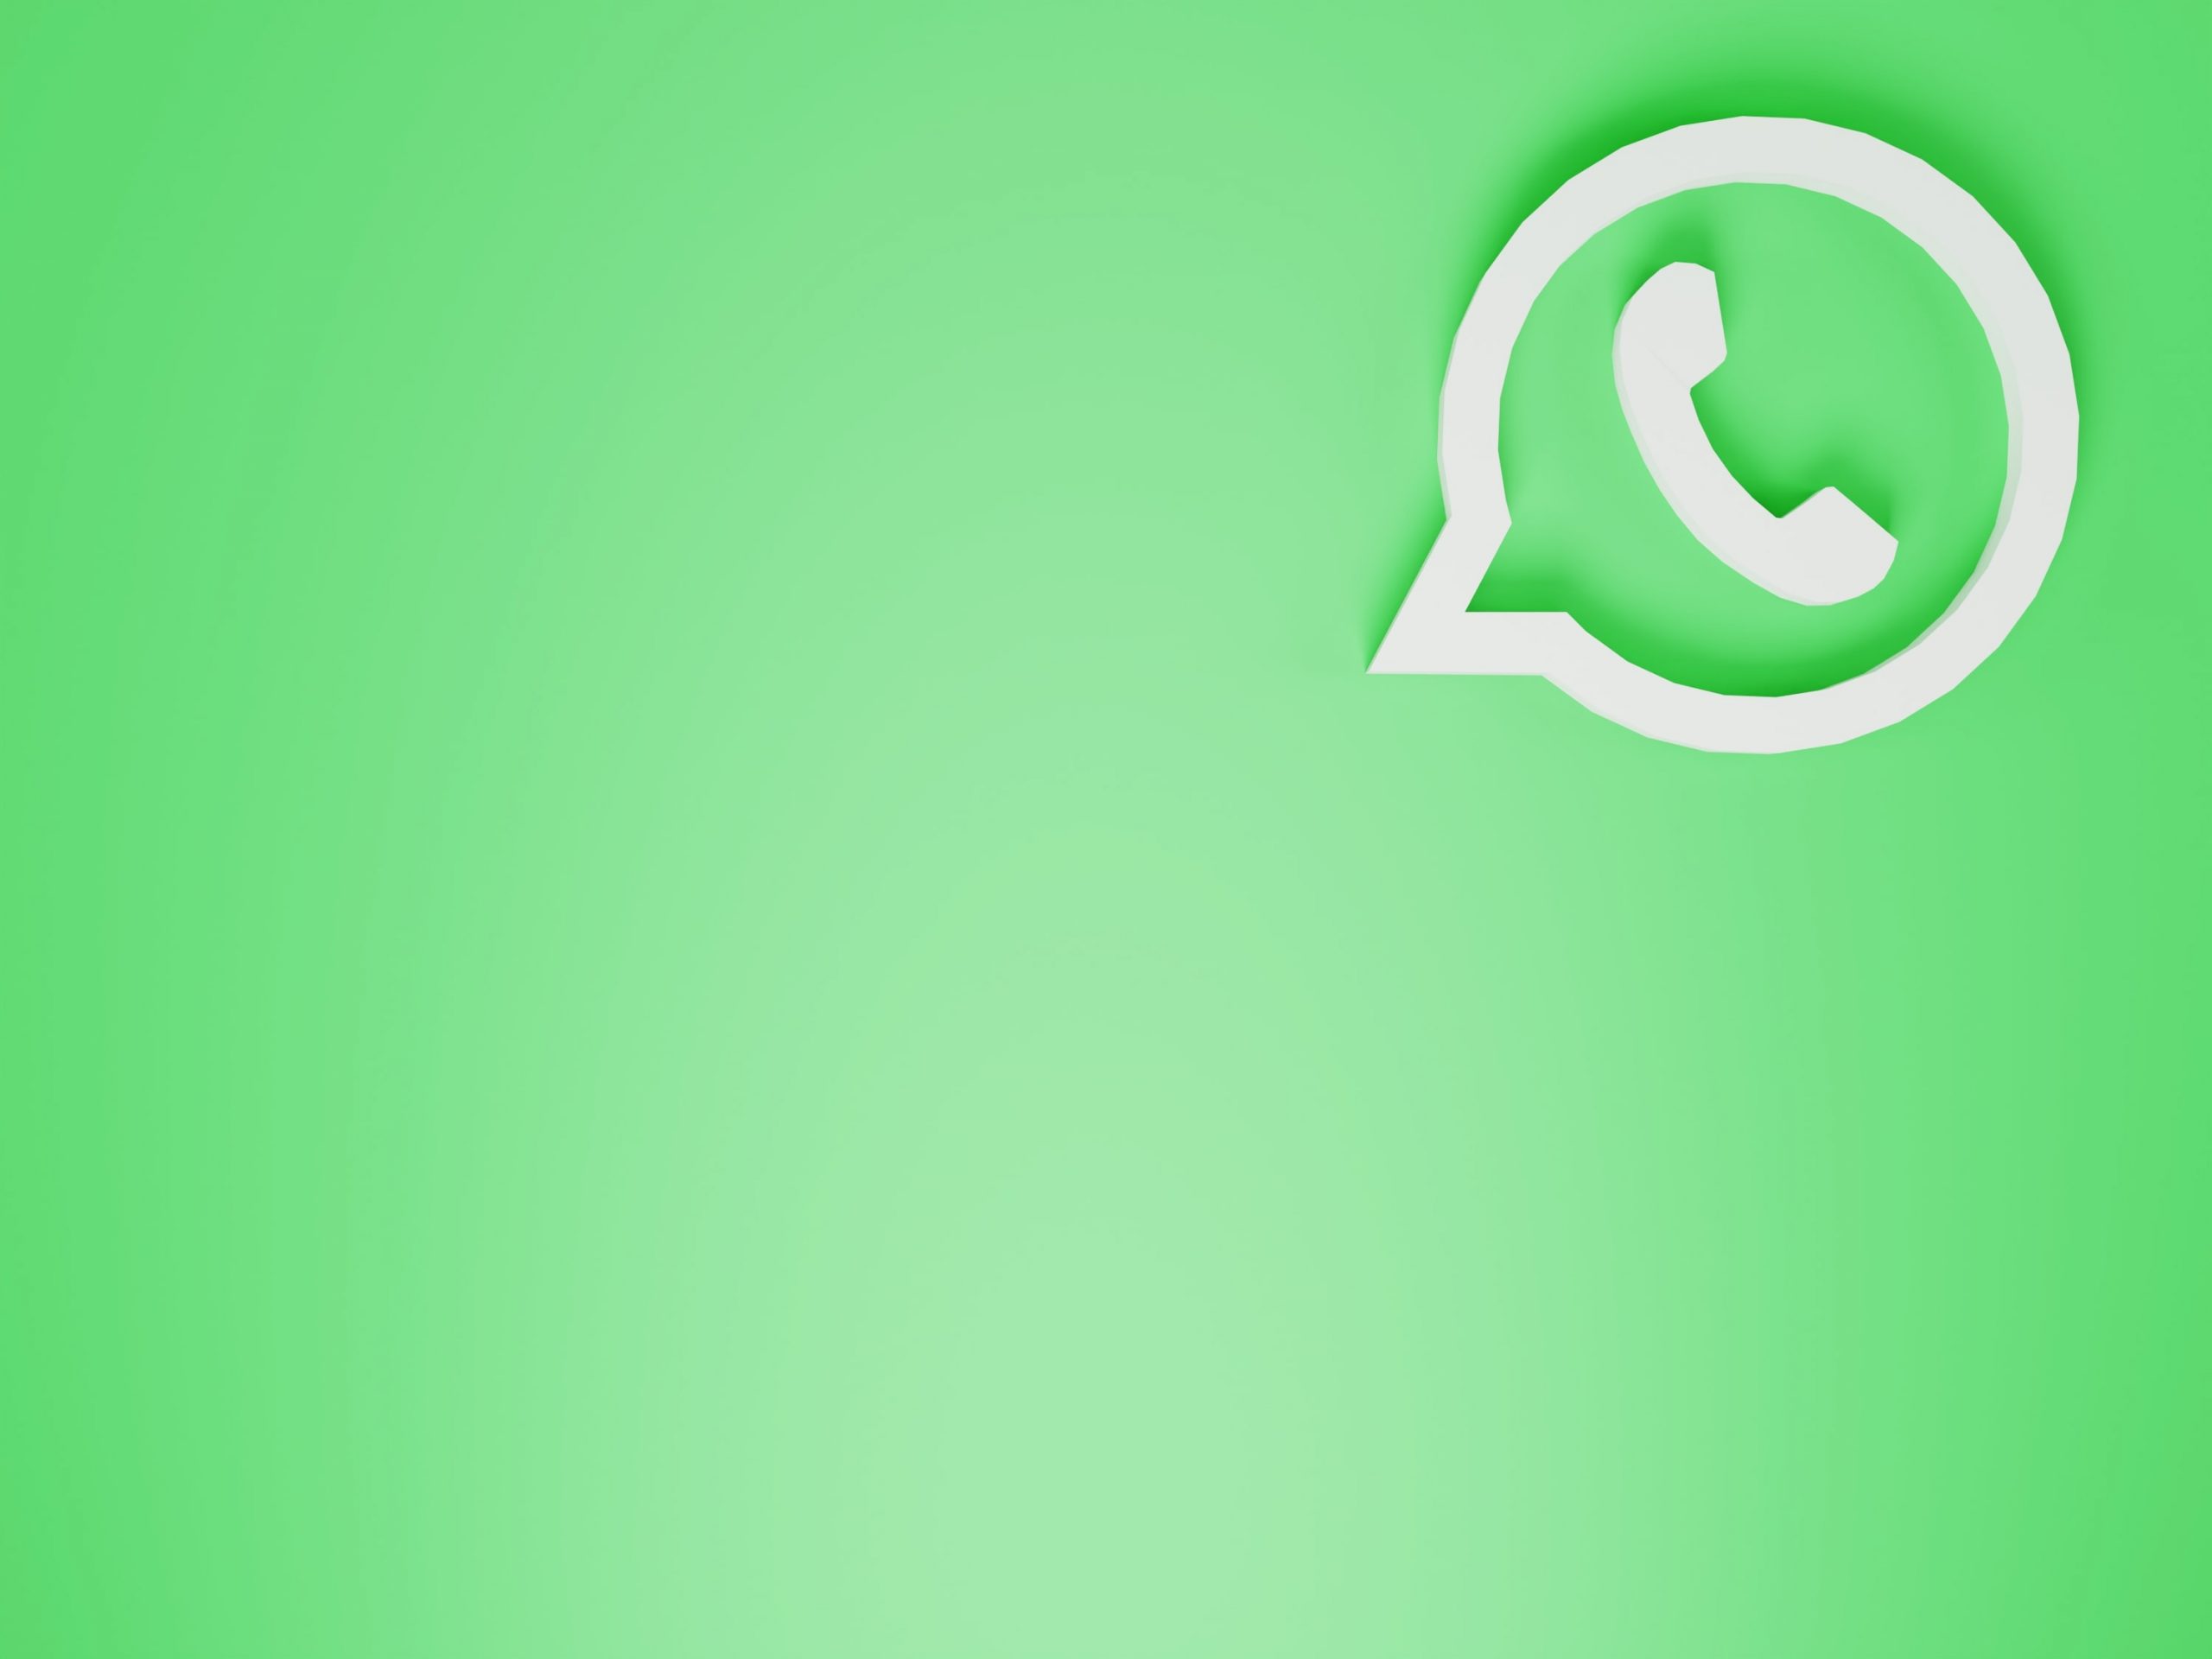 Administradores de grupos de WhatsApp pueden borrar mensajes